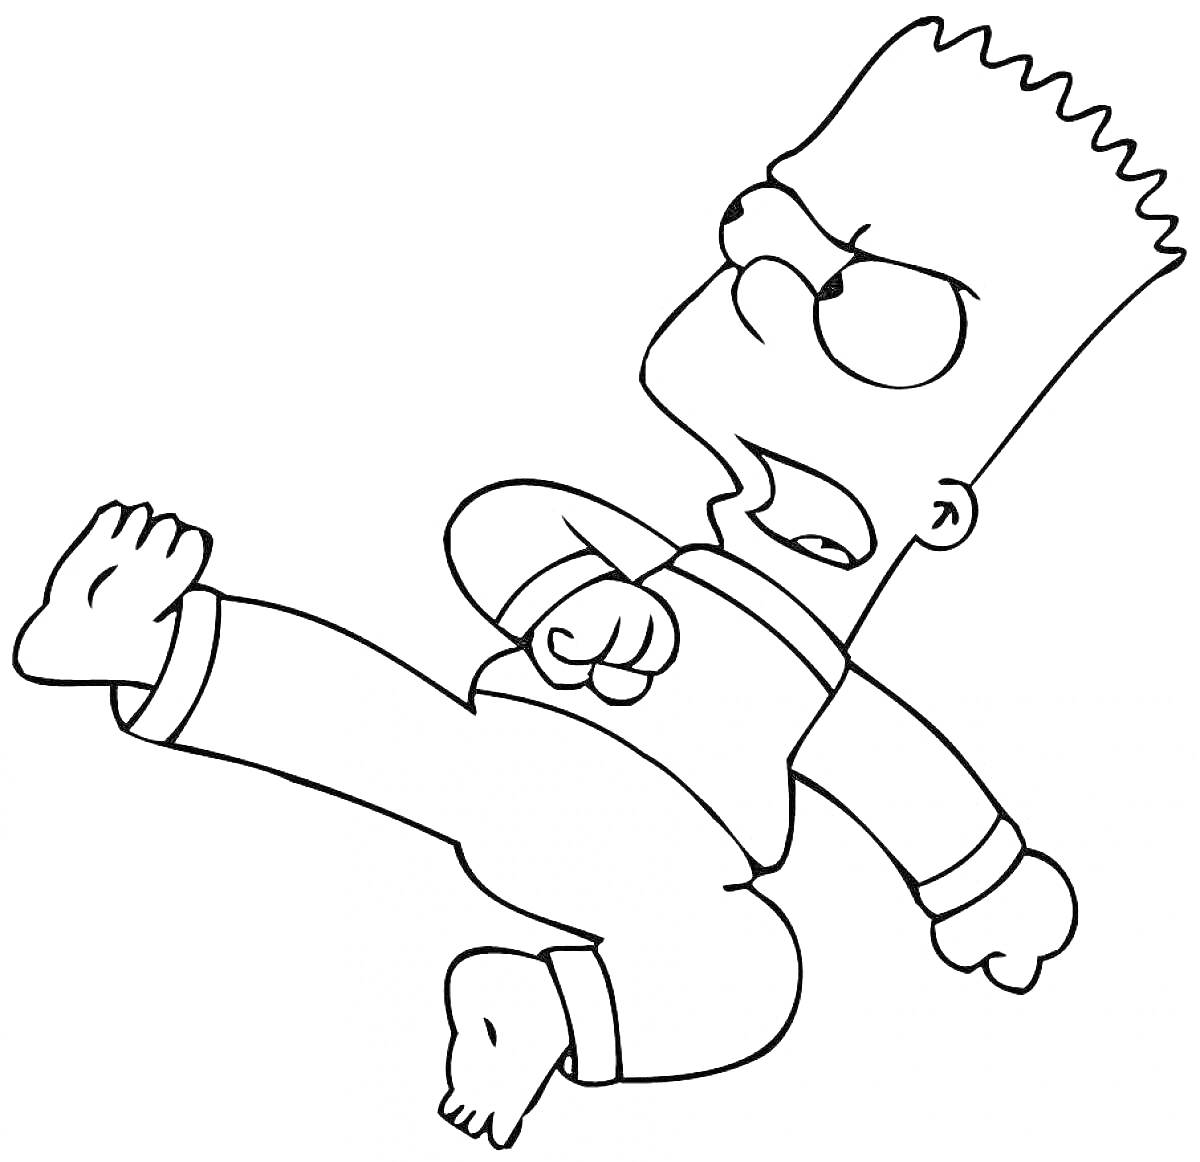 Раскраска Барт Симпсон выполняет удар ногой